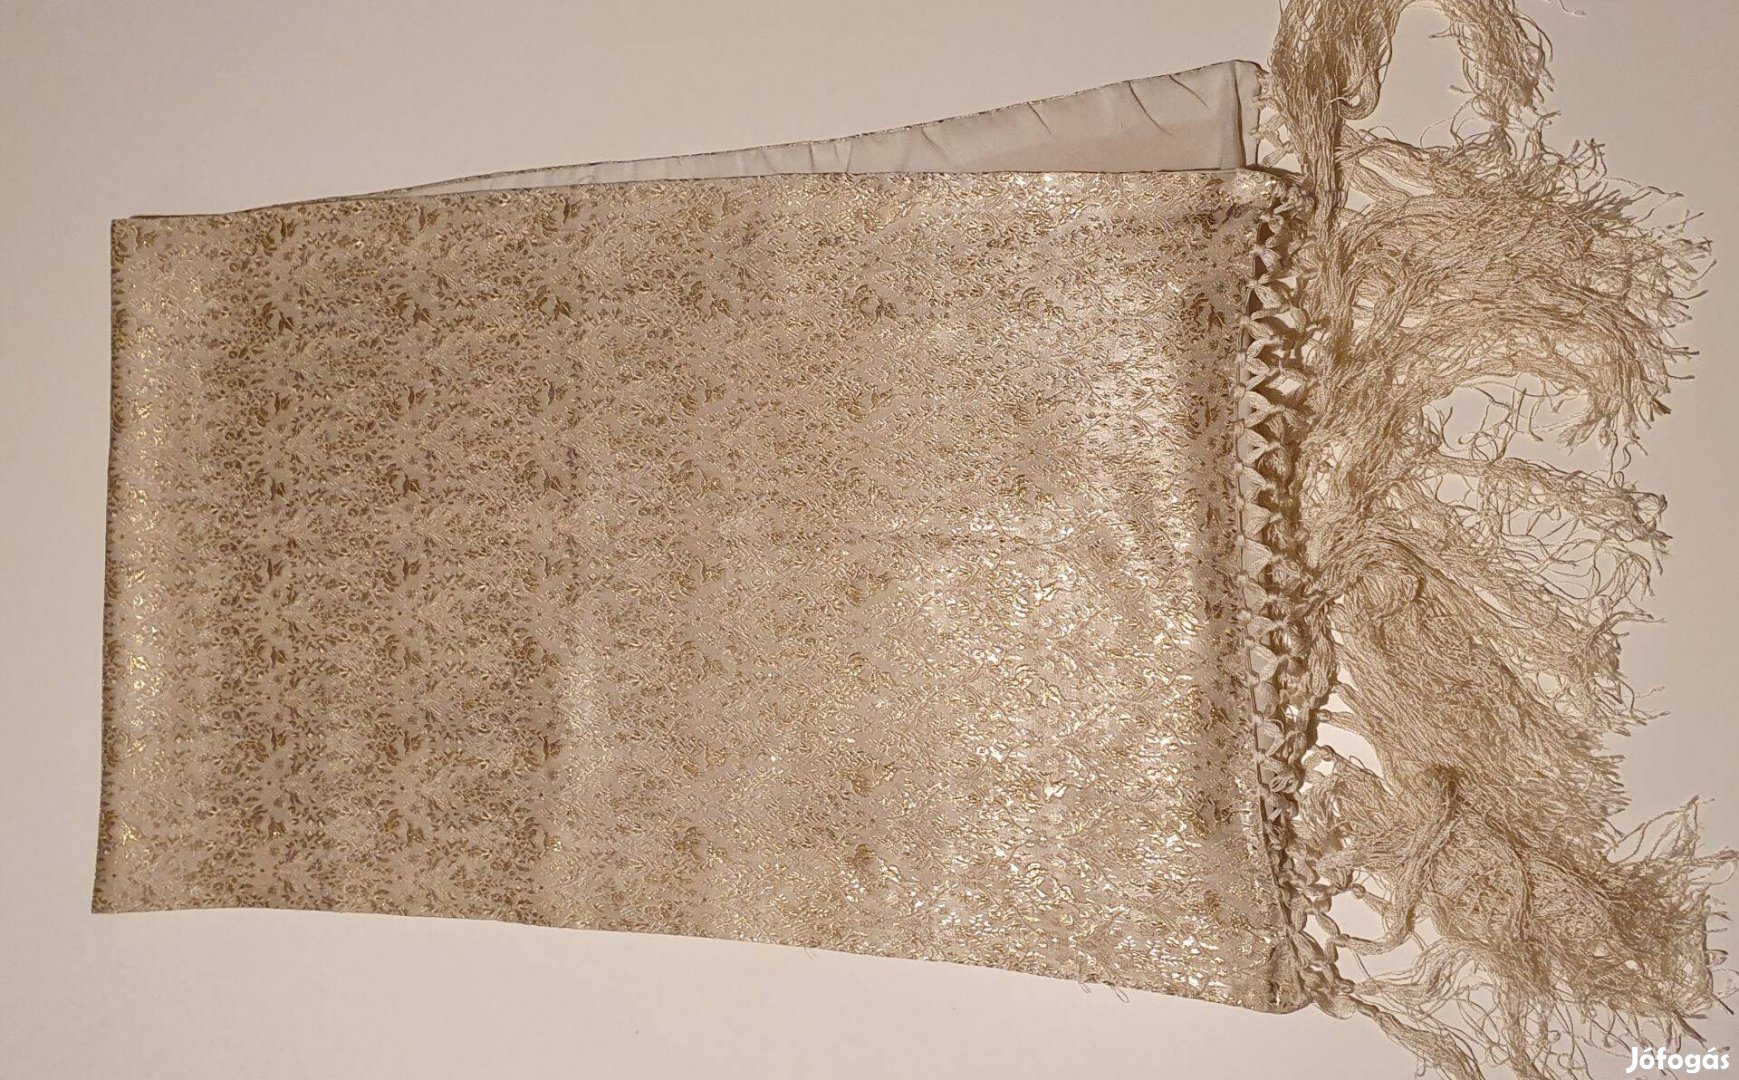 Aranyszállal átszőtt fehér-gyöngyház színű iráni selyemkendő vagy sál